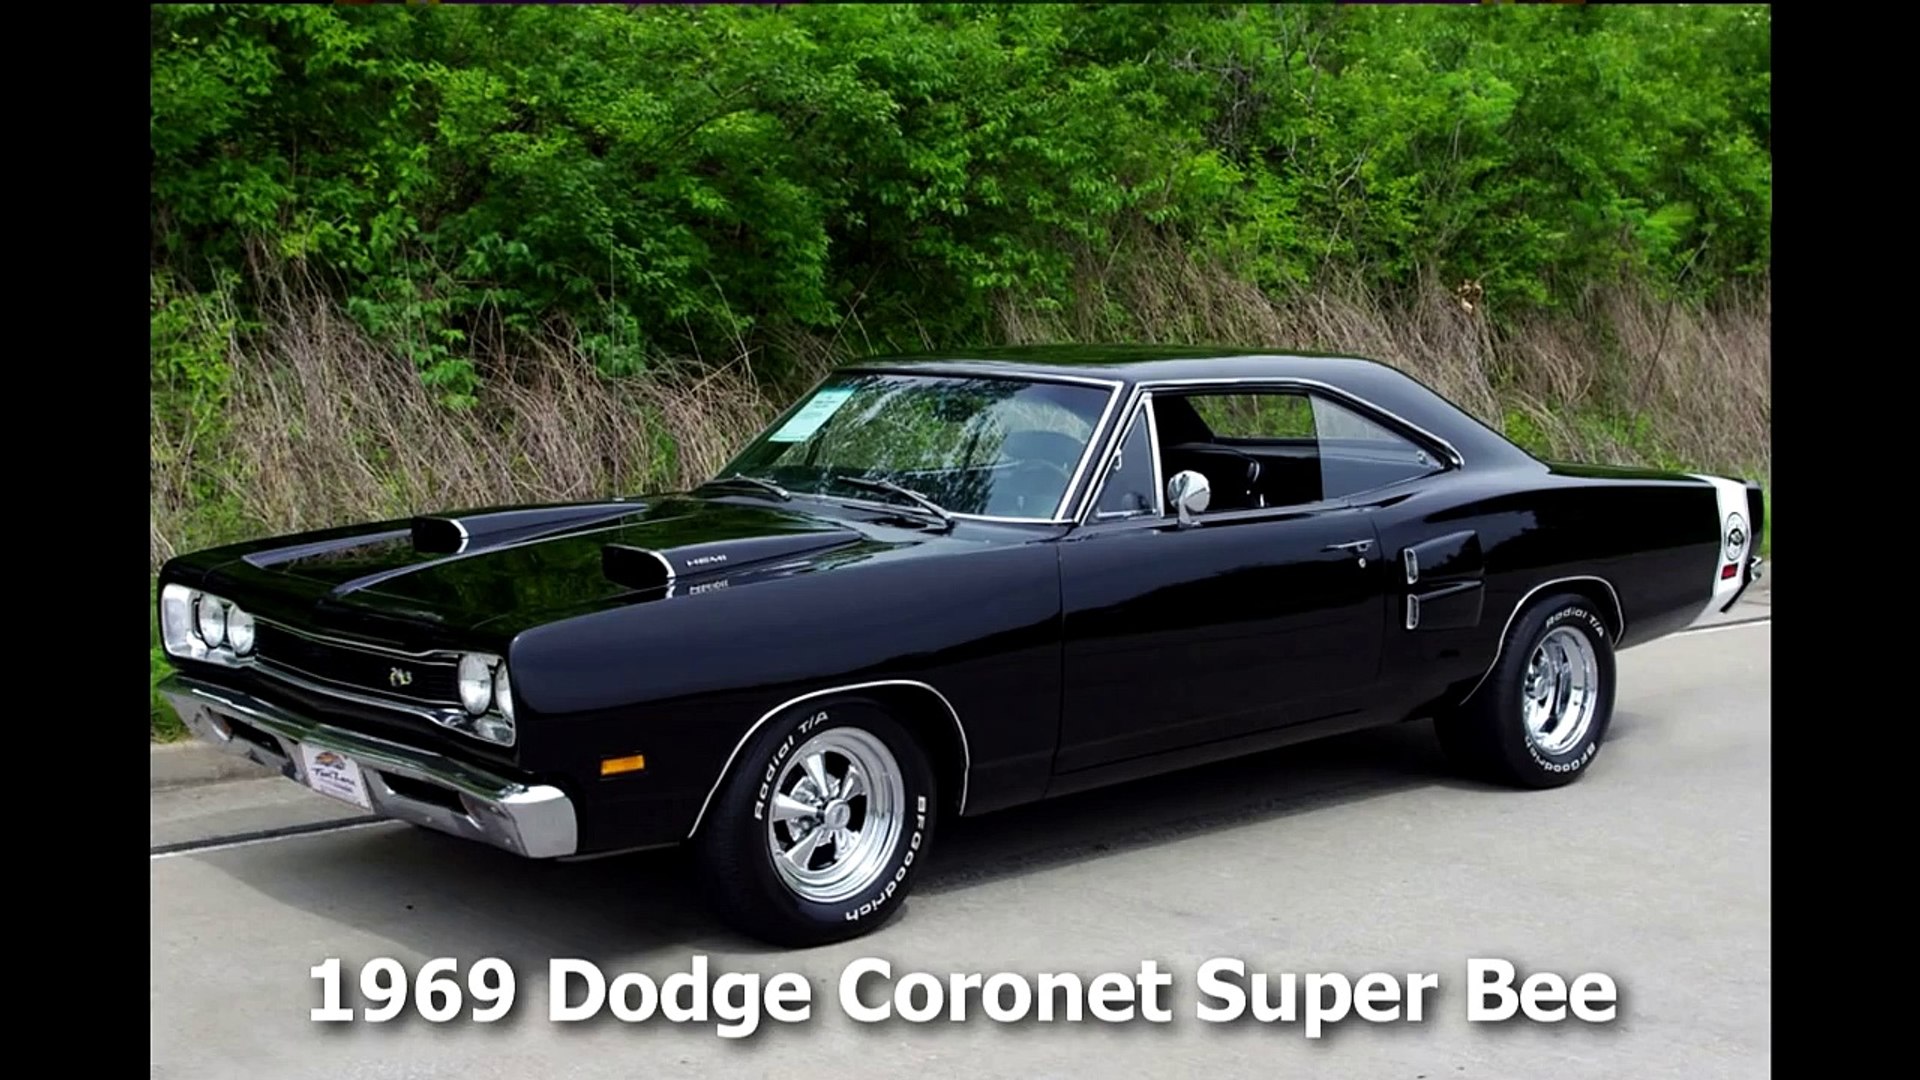 1969 Dodge Coronet Super Bee 472 Hemi Mopar Muscle Car - video Dailymotion